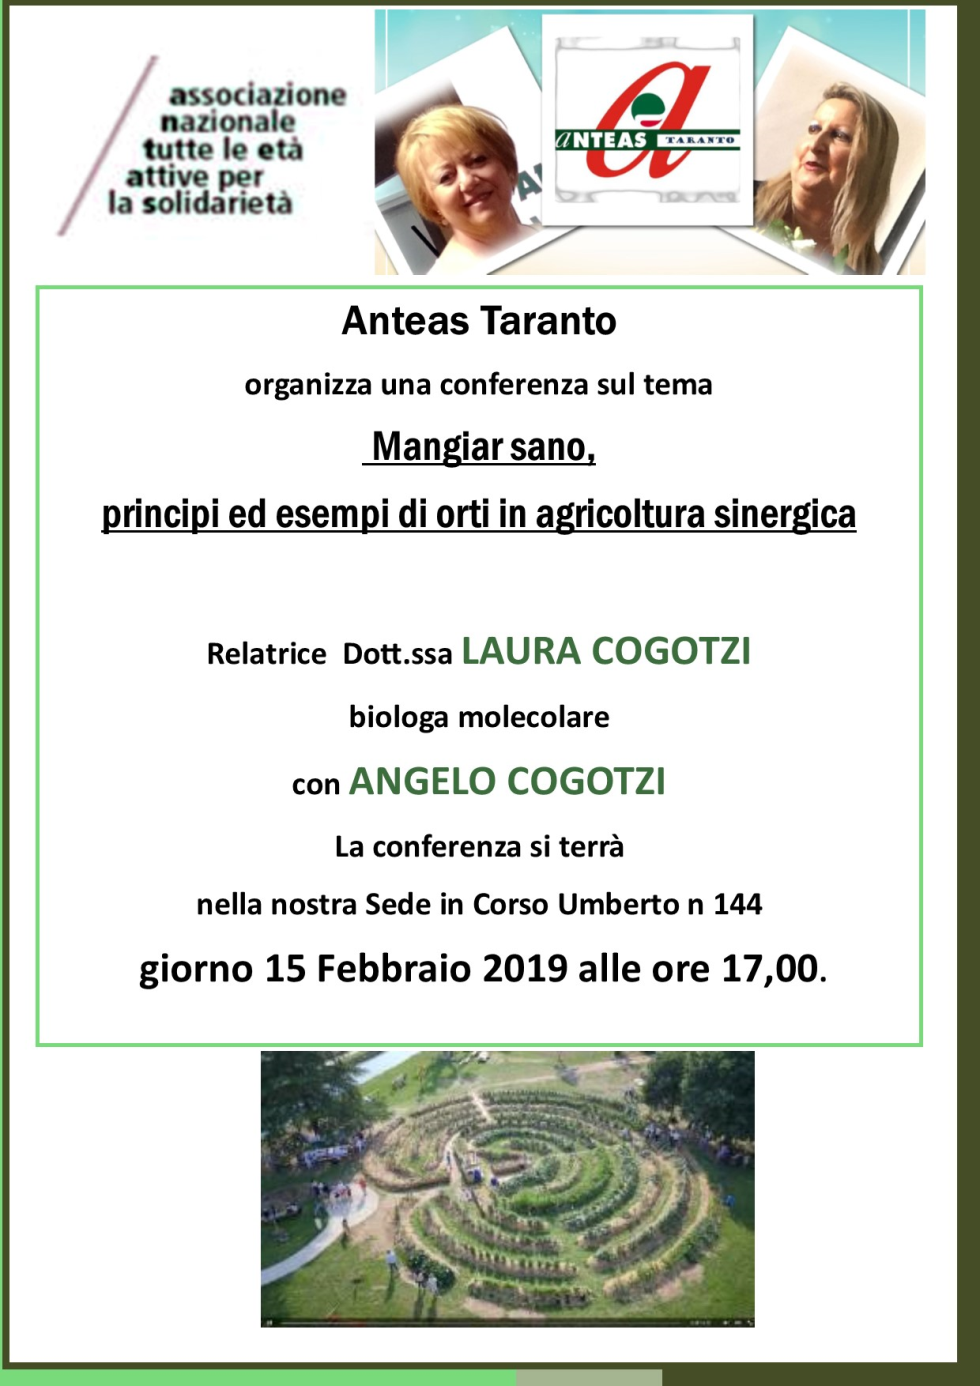 Agricoltura sinergica e sostenibilità. Un approfondimento con gli esperti presso Anteas Taranto.